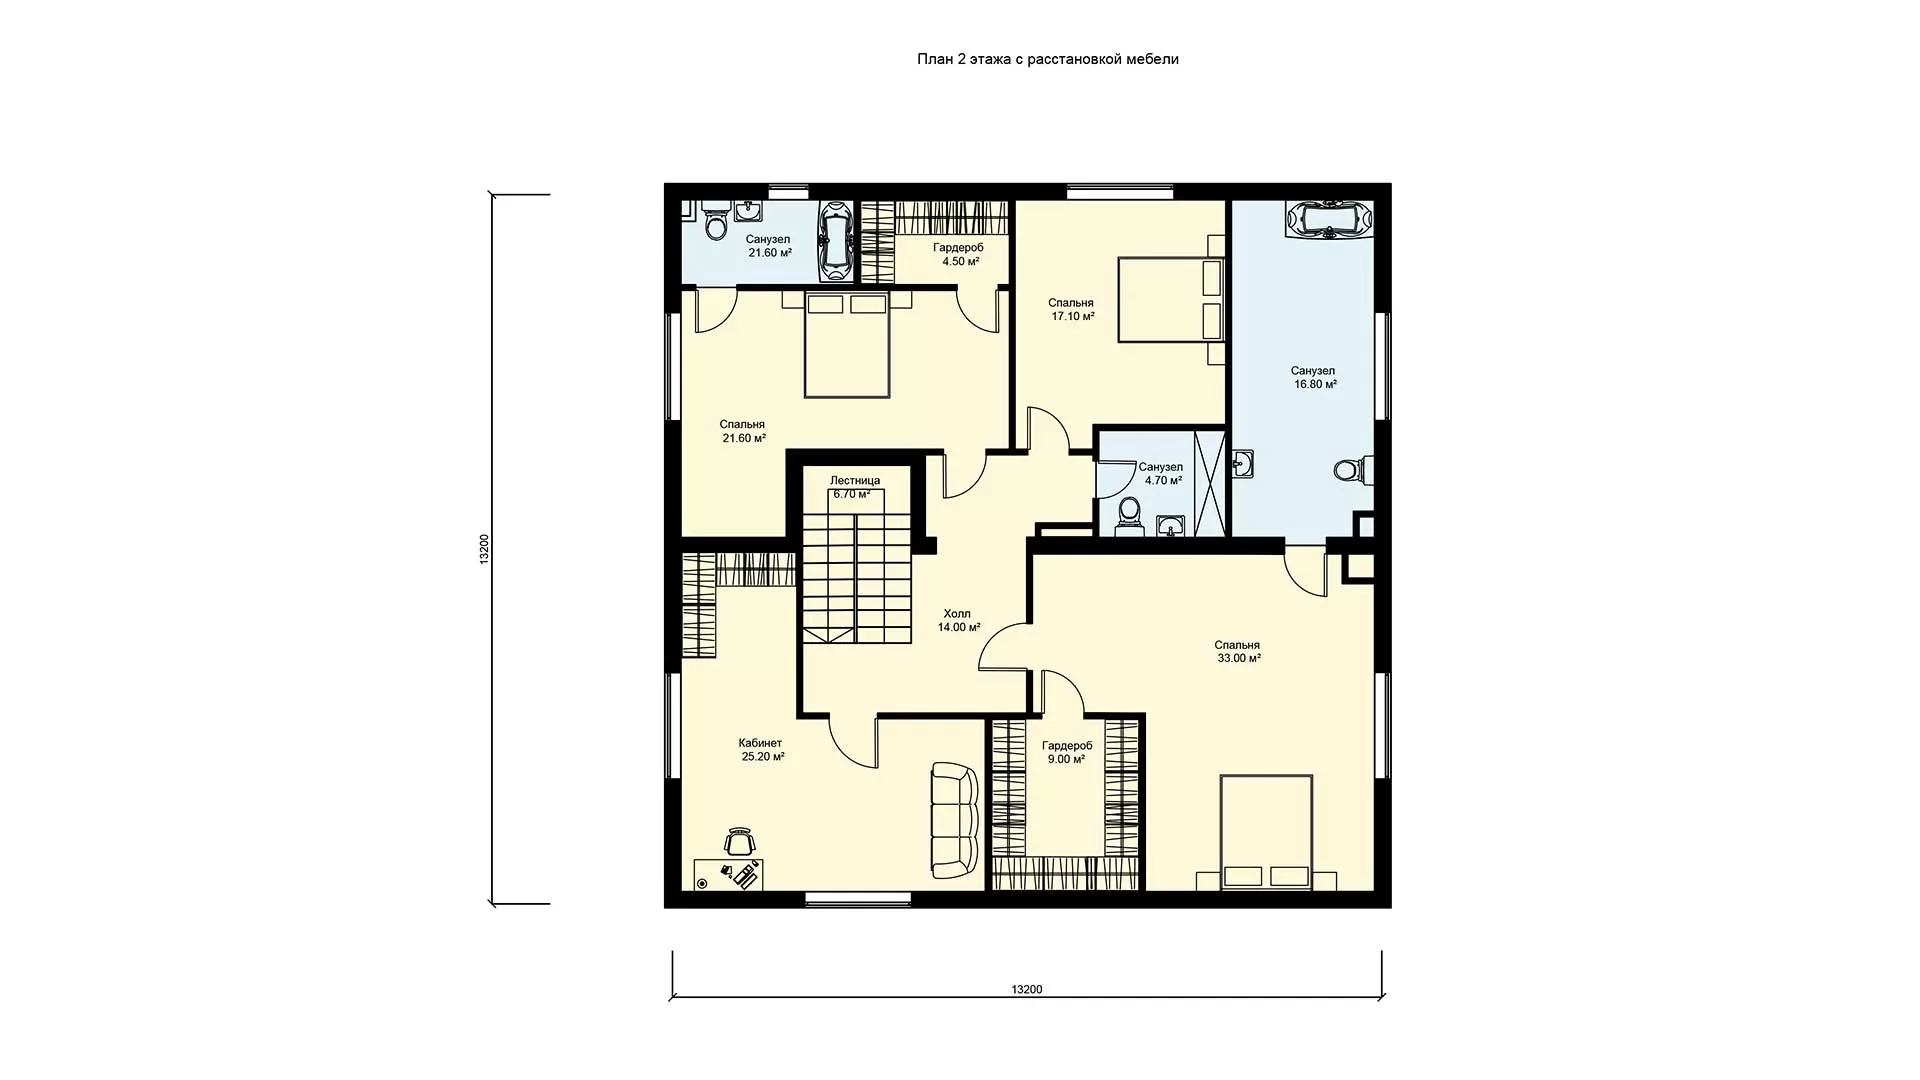 План второго этажа дом на две семьи с двумя входами, проект БП-320